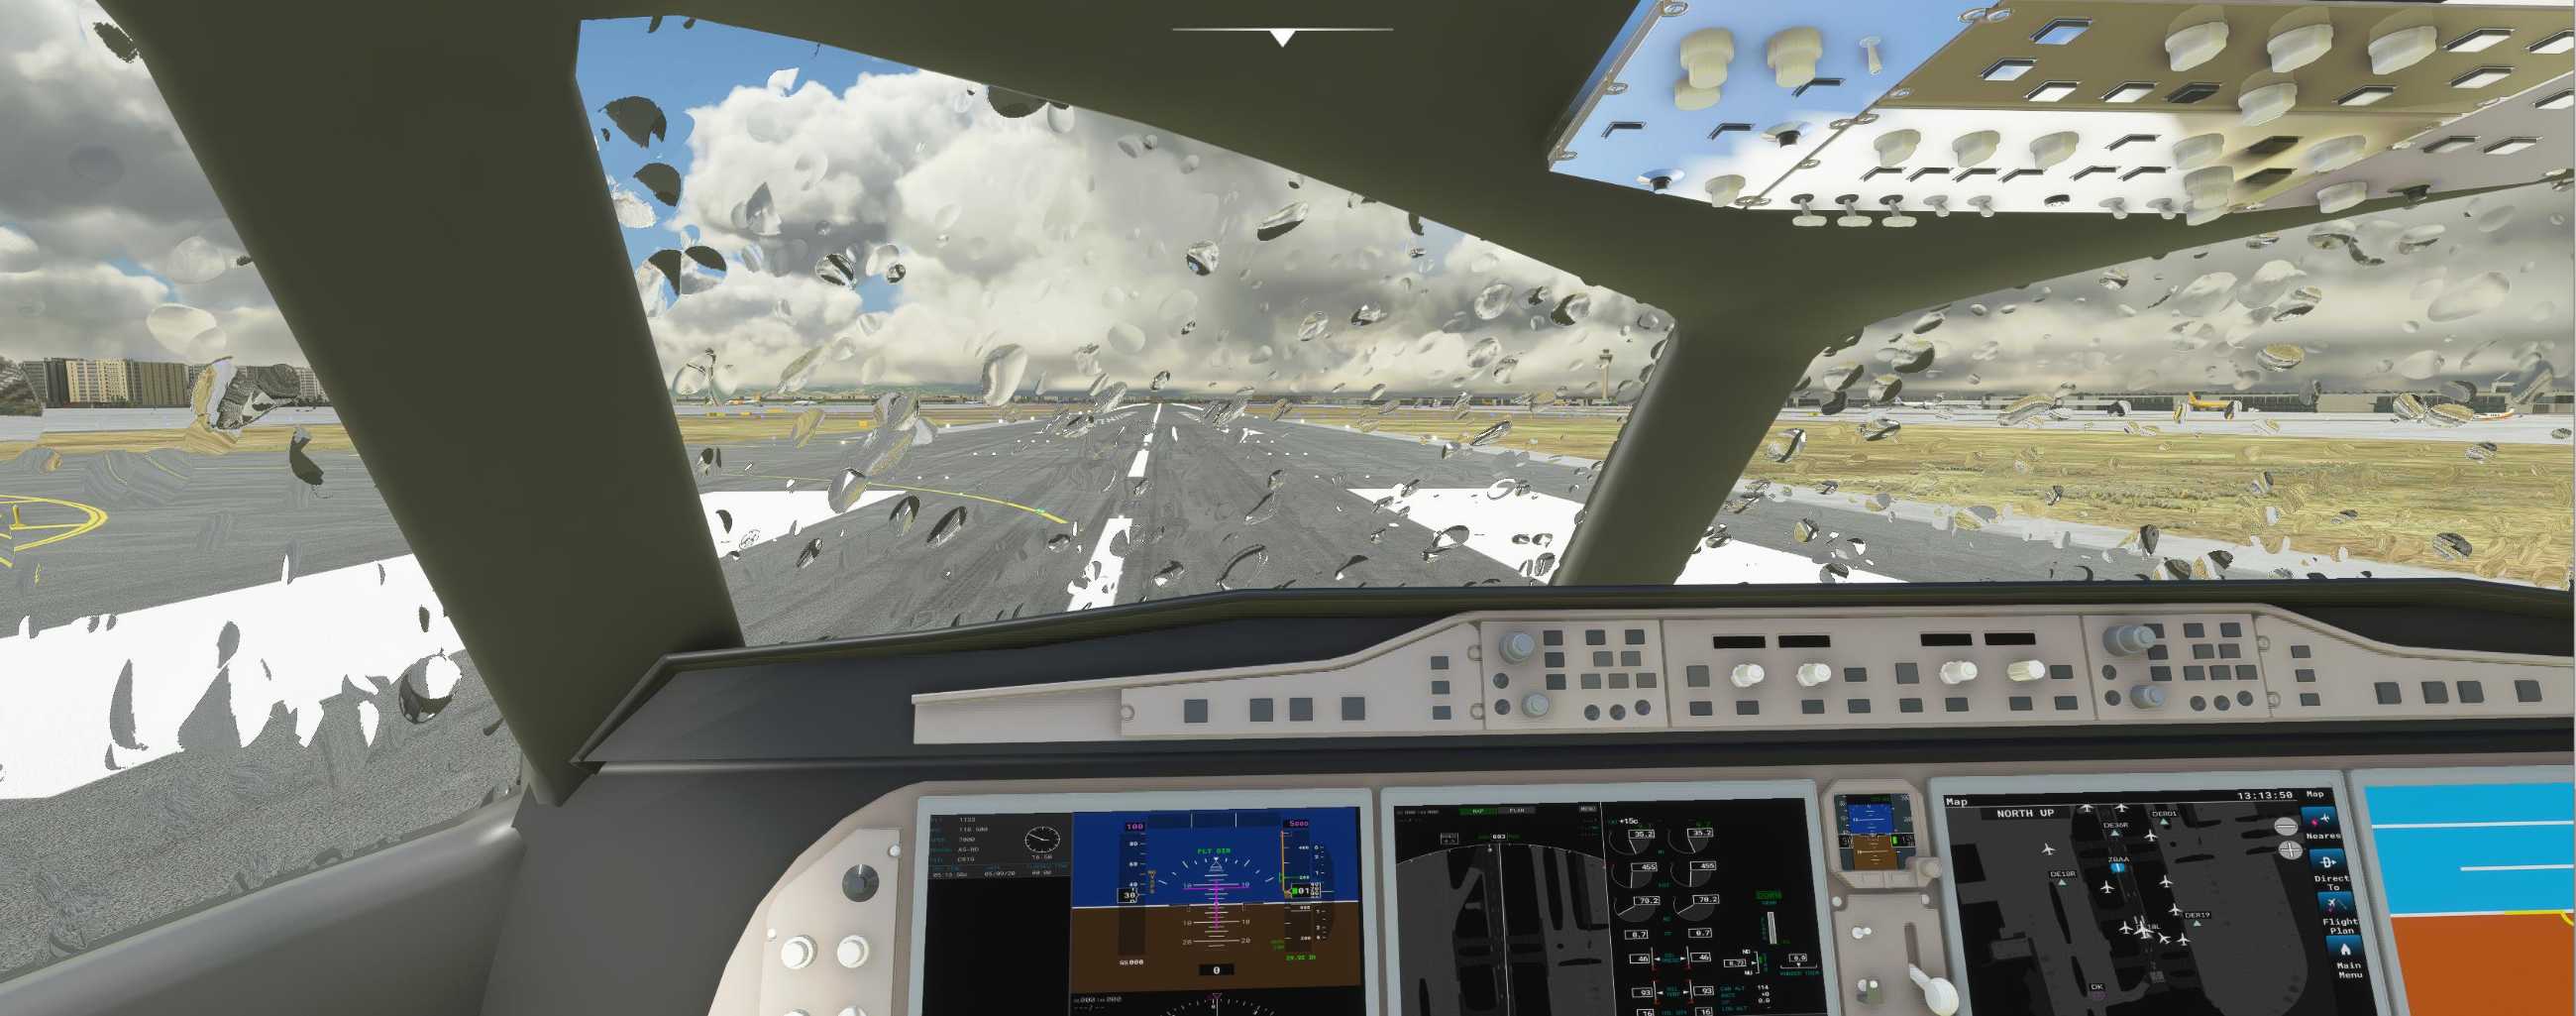 FYCYC-C919 国产大飞机机模 微软模拟飞行演示-855 